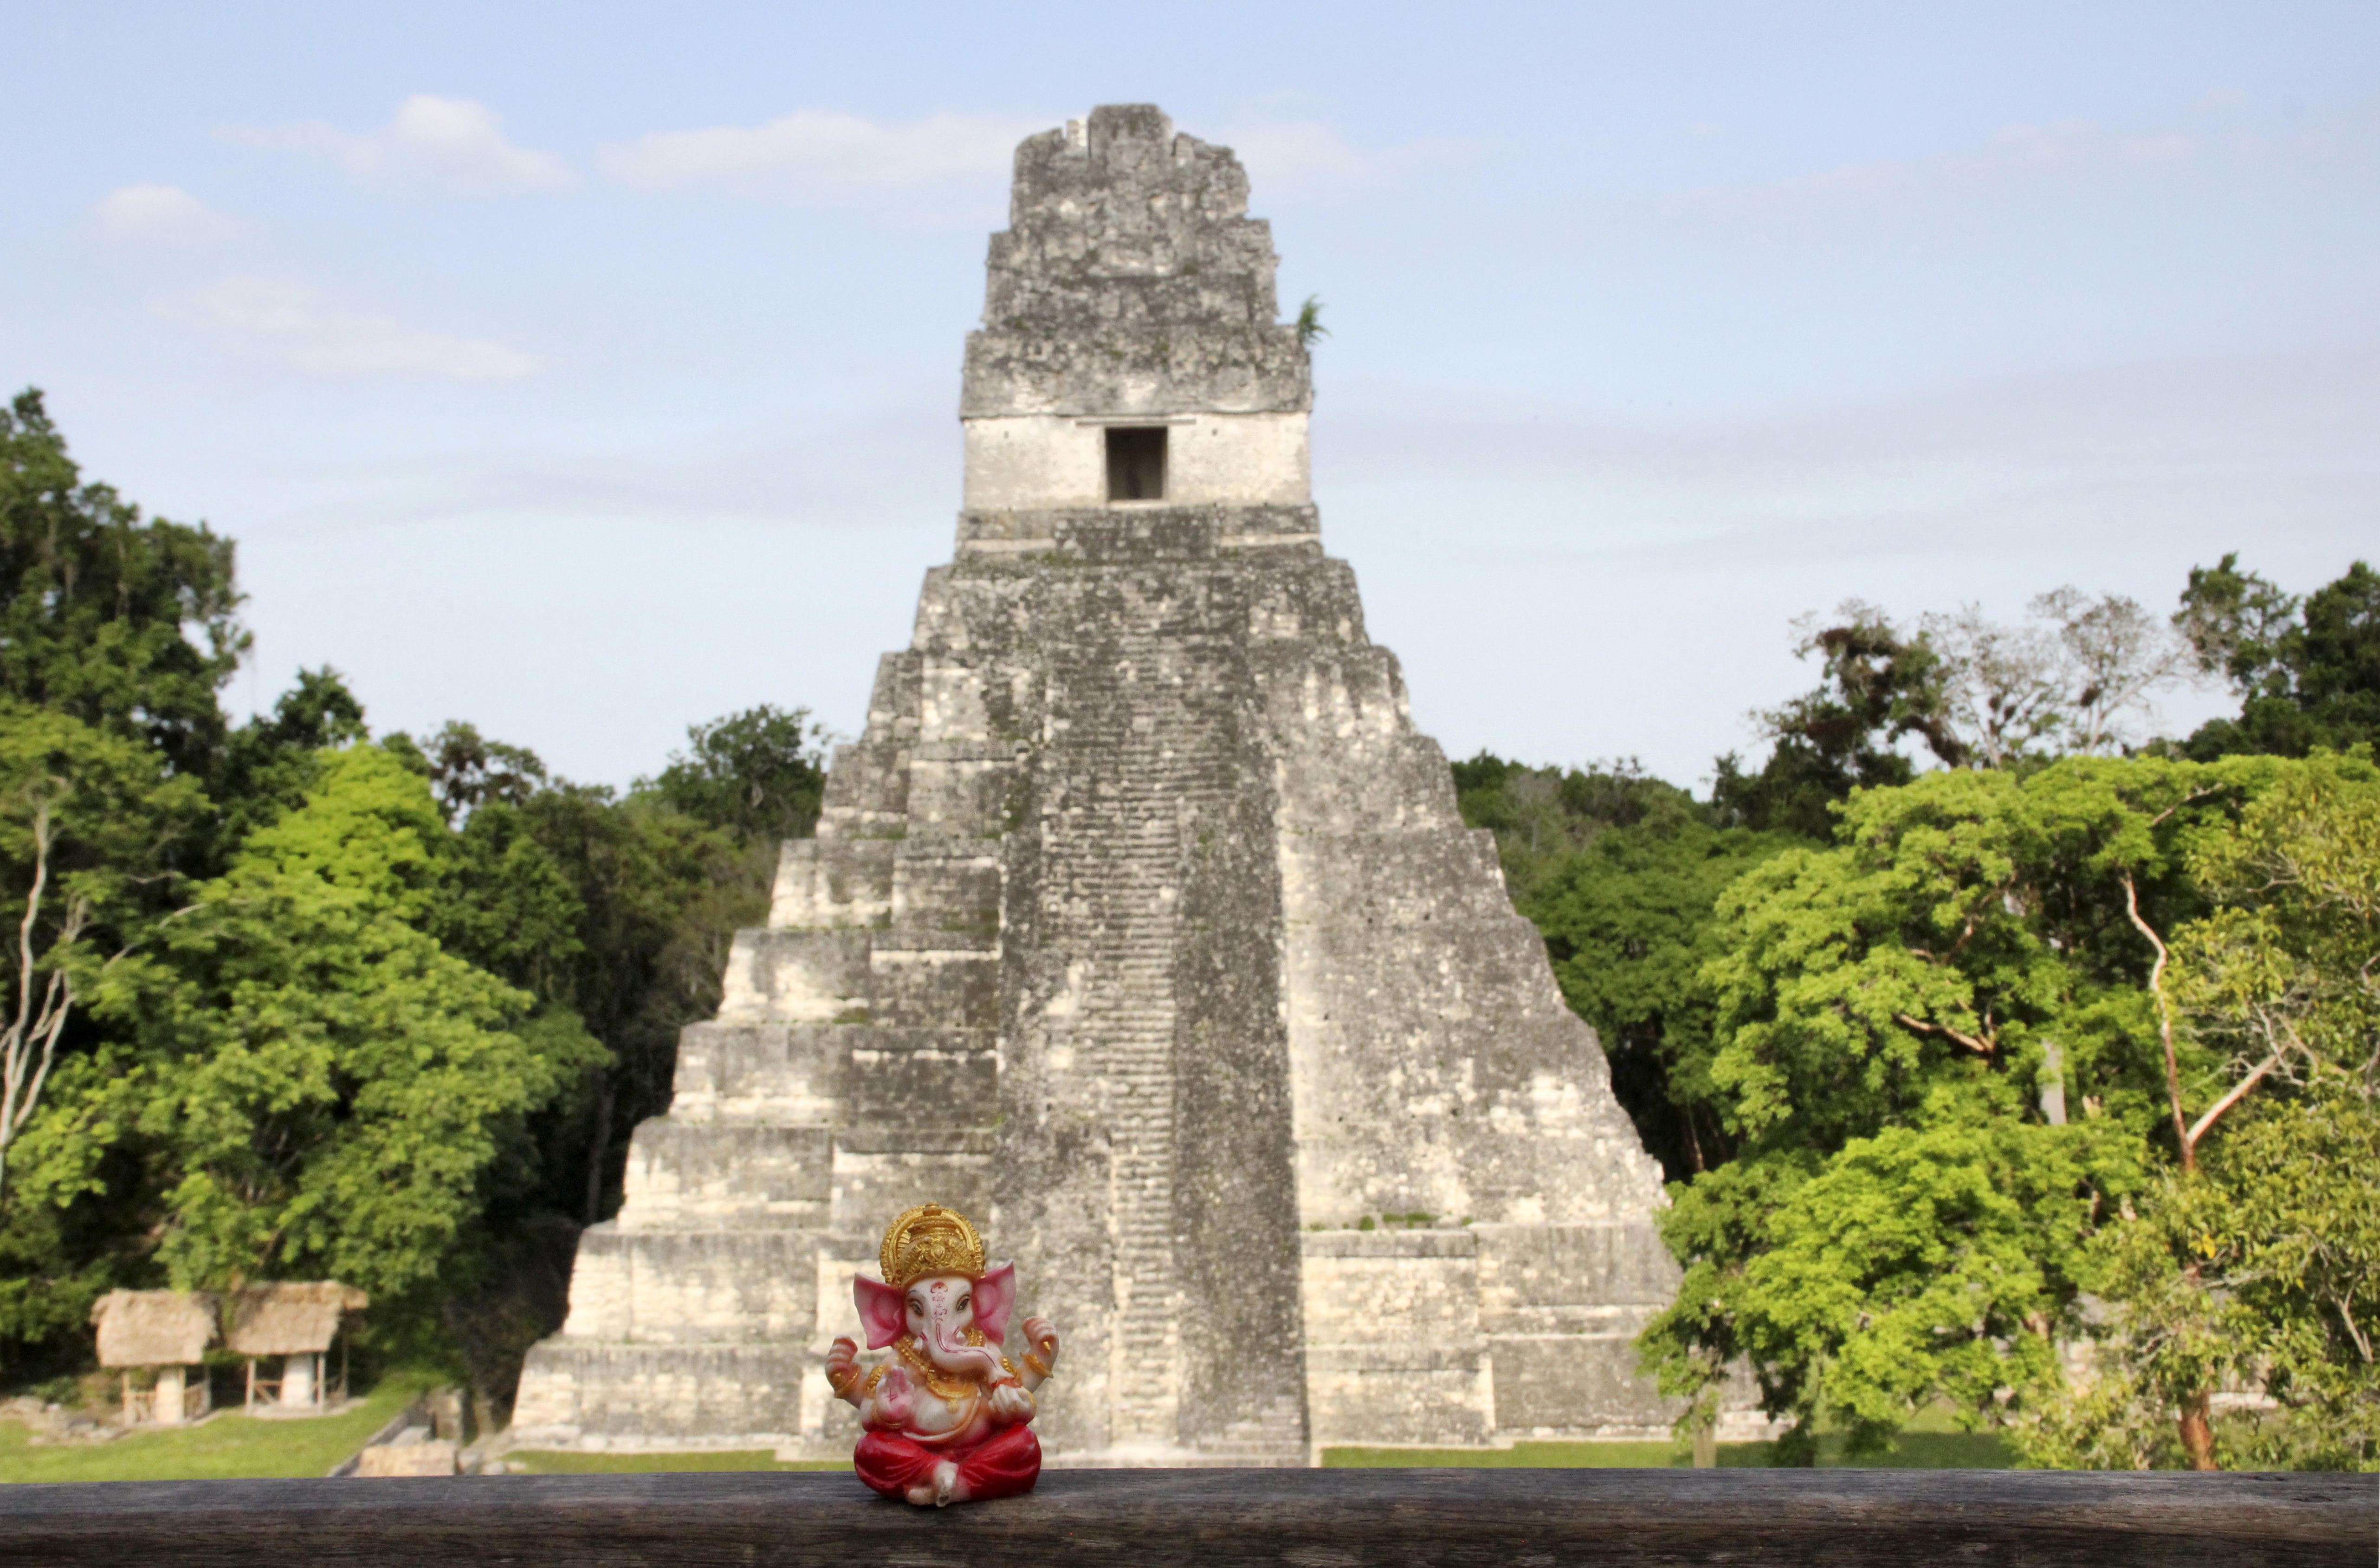 TIKAL, La mayor ciudad del mundo maya - Mis viajes por ahí